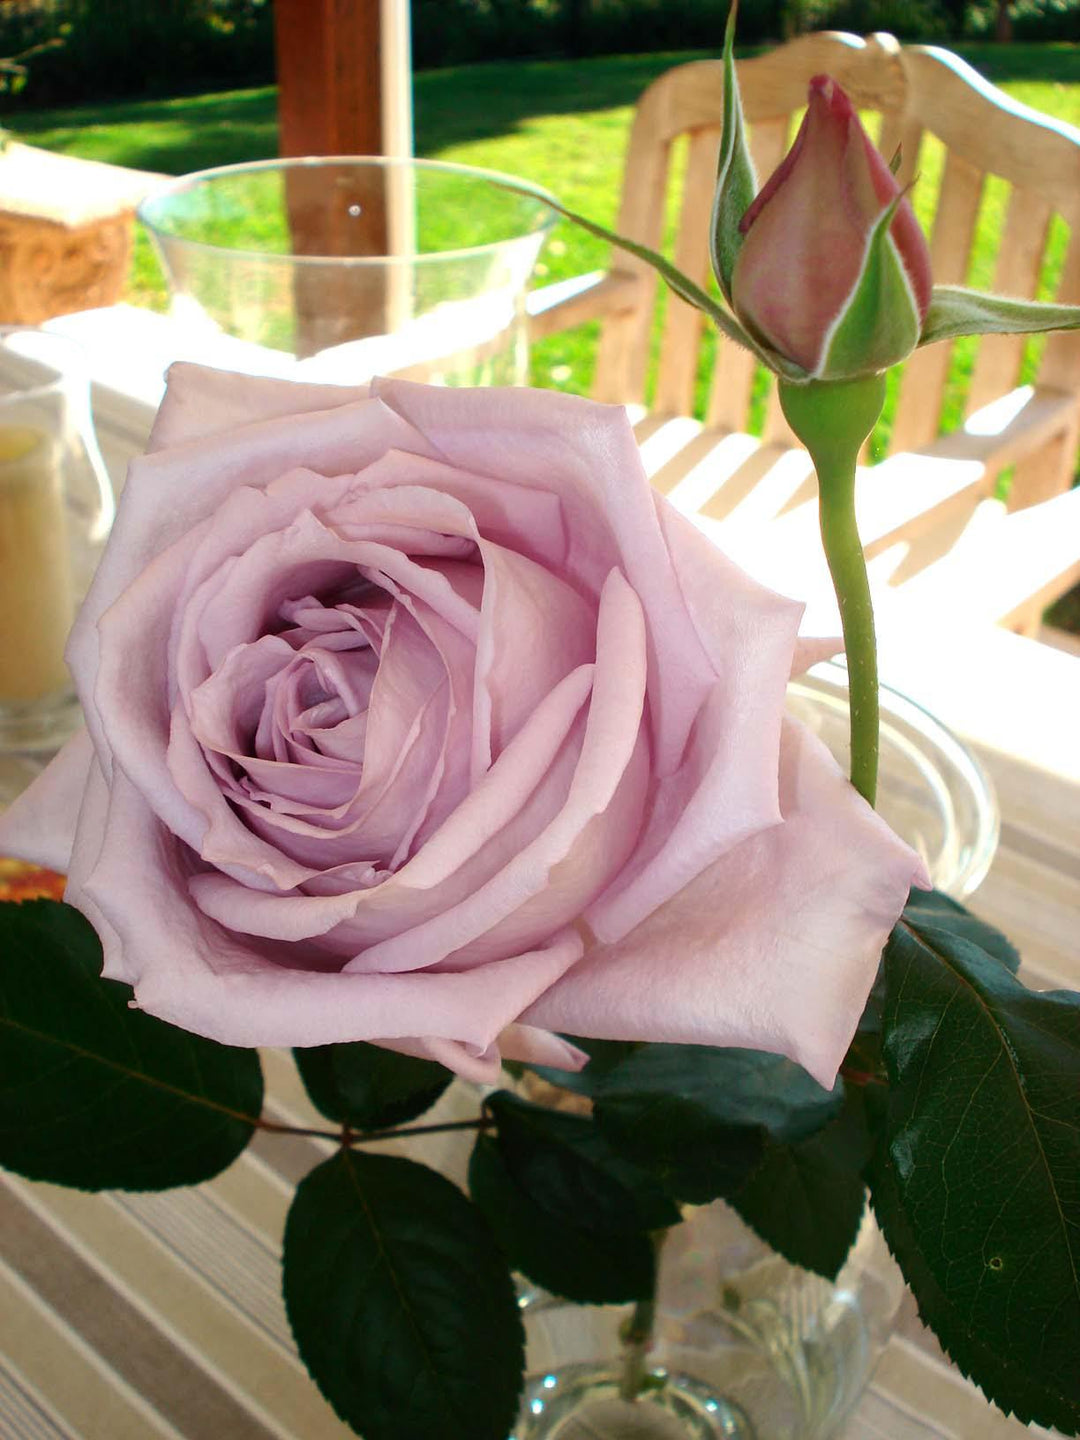 BLUE MOON ® - Butasi trandafiri de gradina - Trandafir teahibrid creat in Germania de Tantau